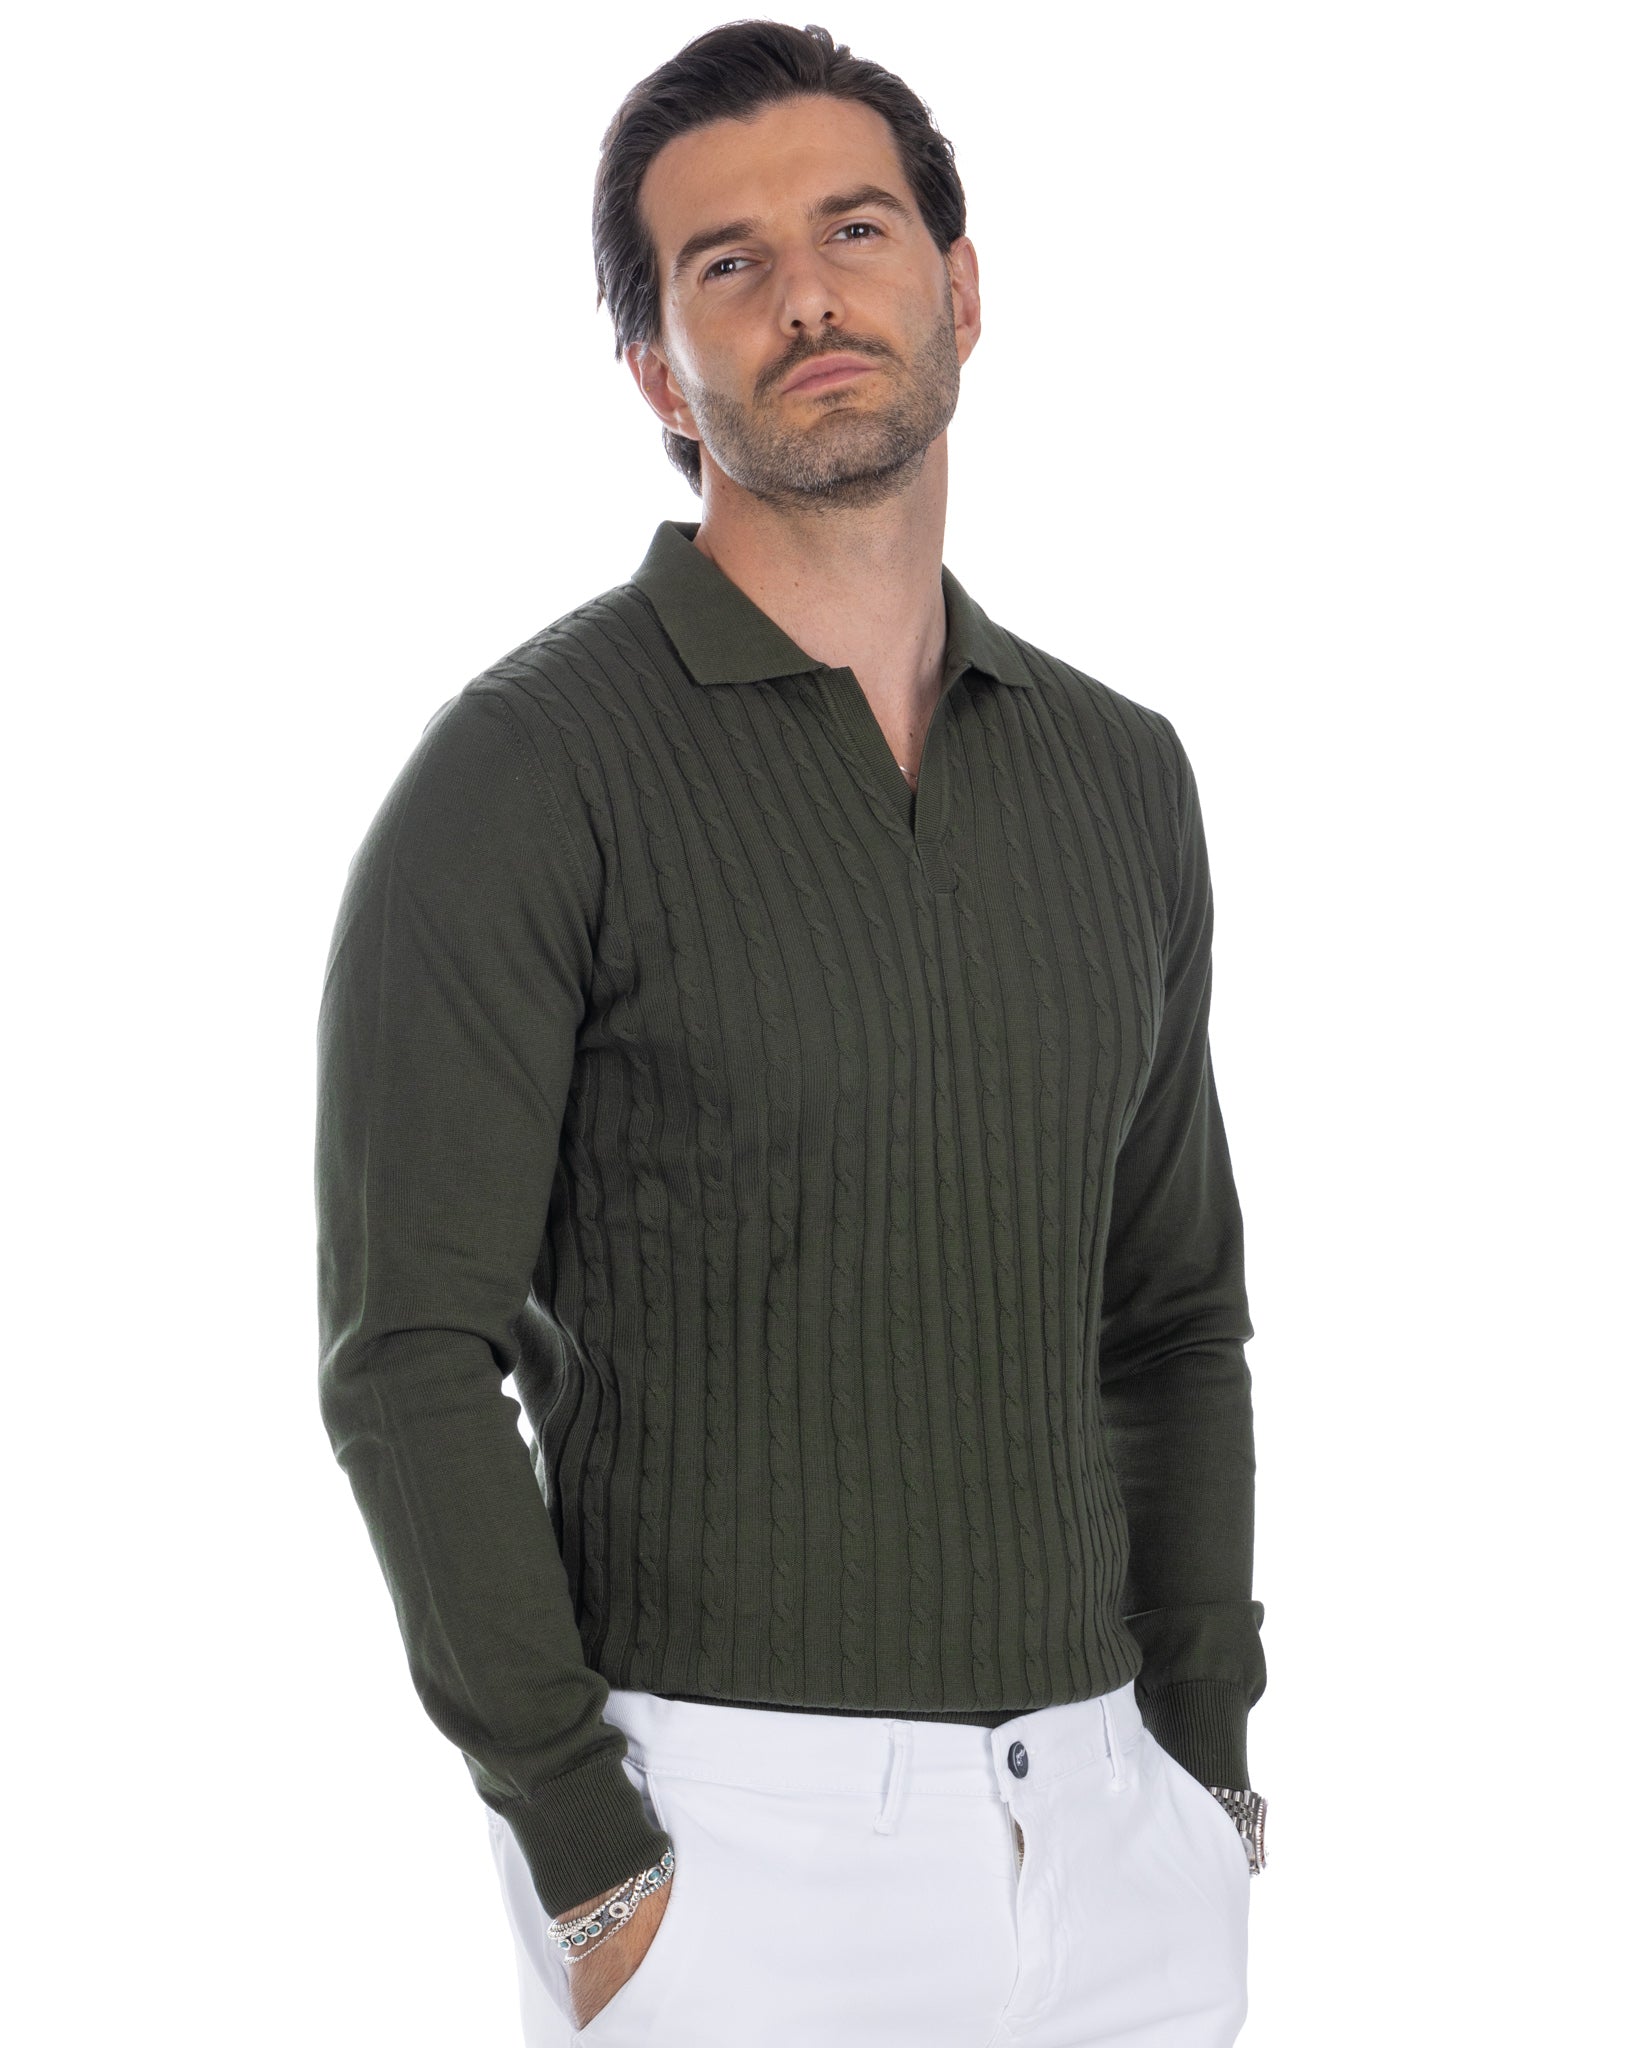 Matteo - khaki sweater with braids